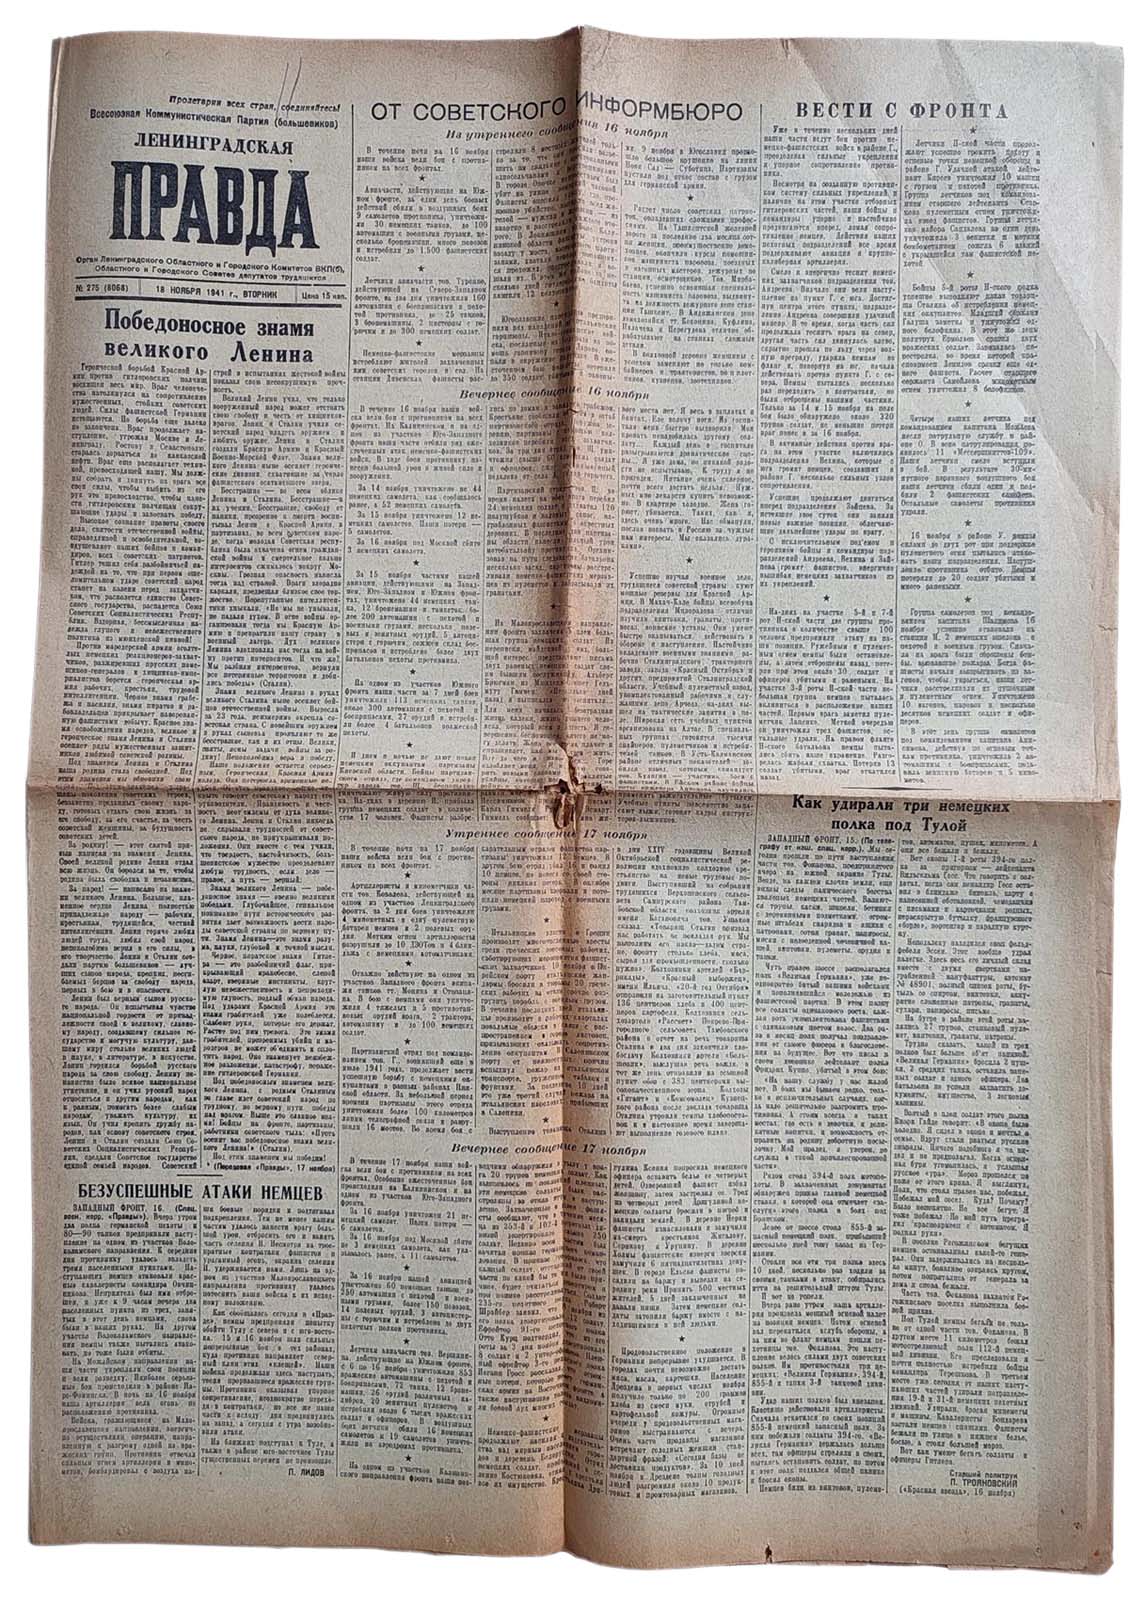 Newspaper Leningradskaya Pravda (Leningrad Truth), issue #275, Nov 